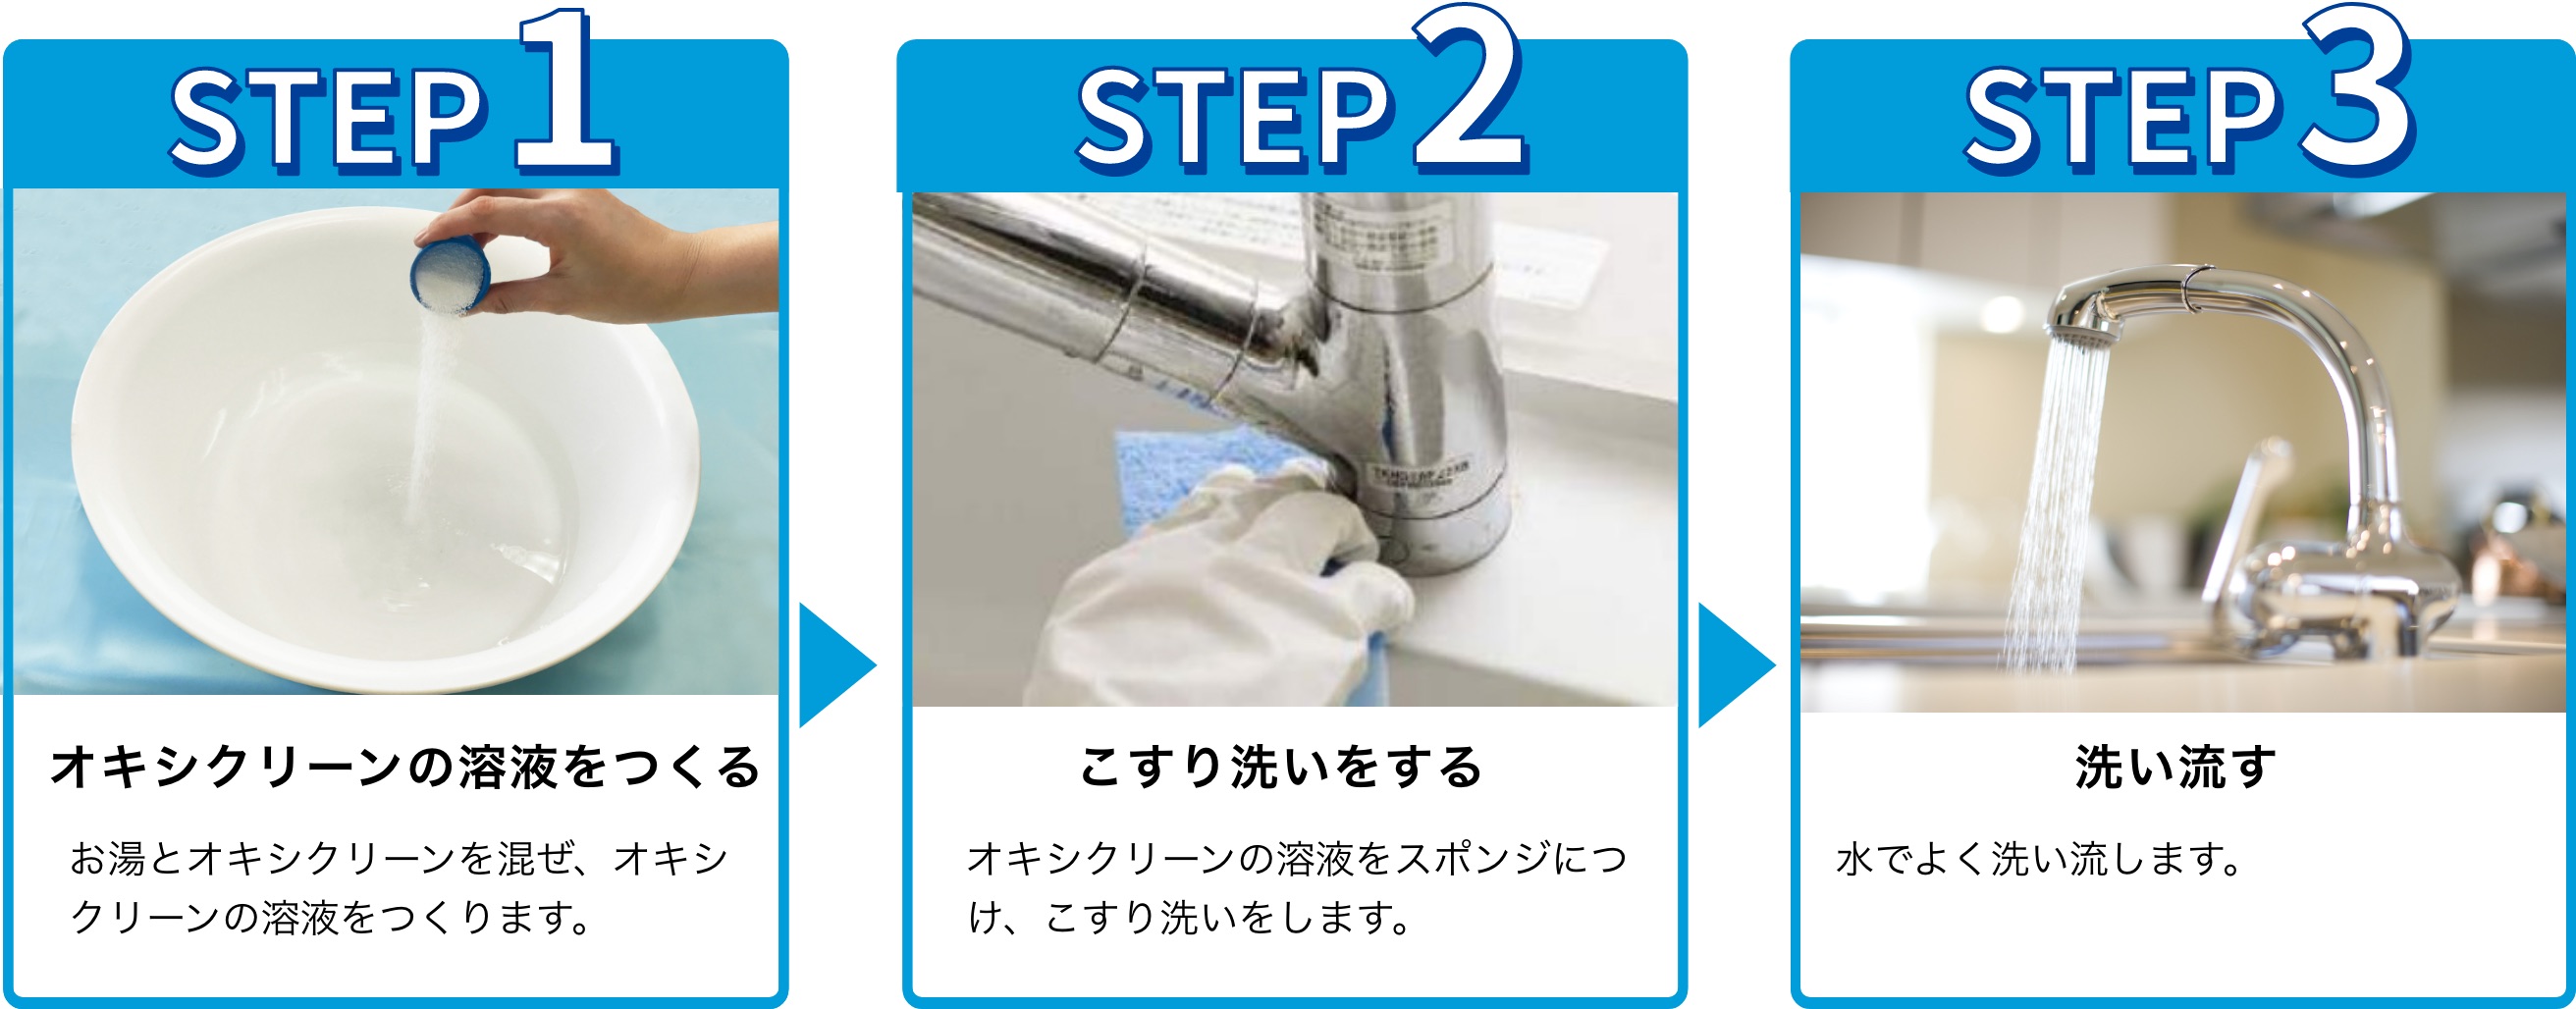 使用手順：1.溶液を作る。お湯とオキシクリーンを混ぜ、オキシクリーン溶液をつくります。 2.こすり洗いをする。オキシクリーンの溶液をスポンジにつけ、こすり洗いをします。3.洗い流す。水でよく洗い流します。